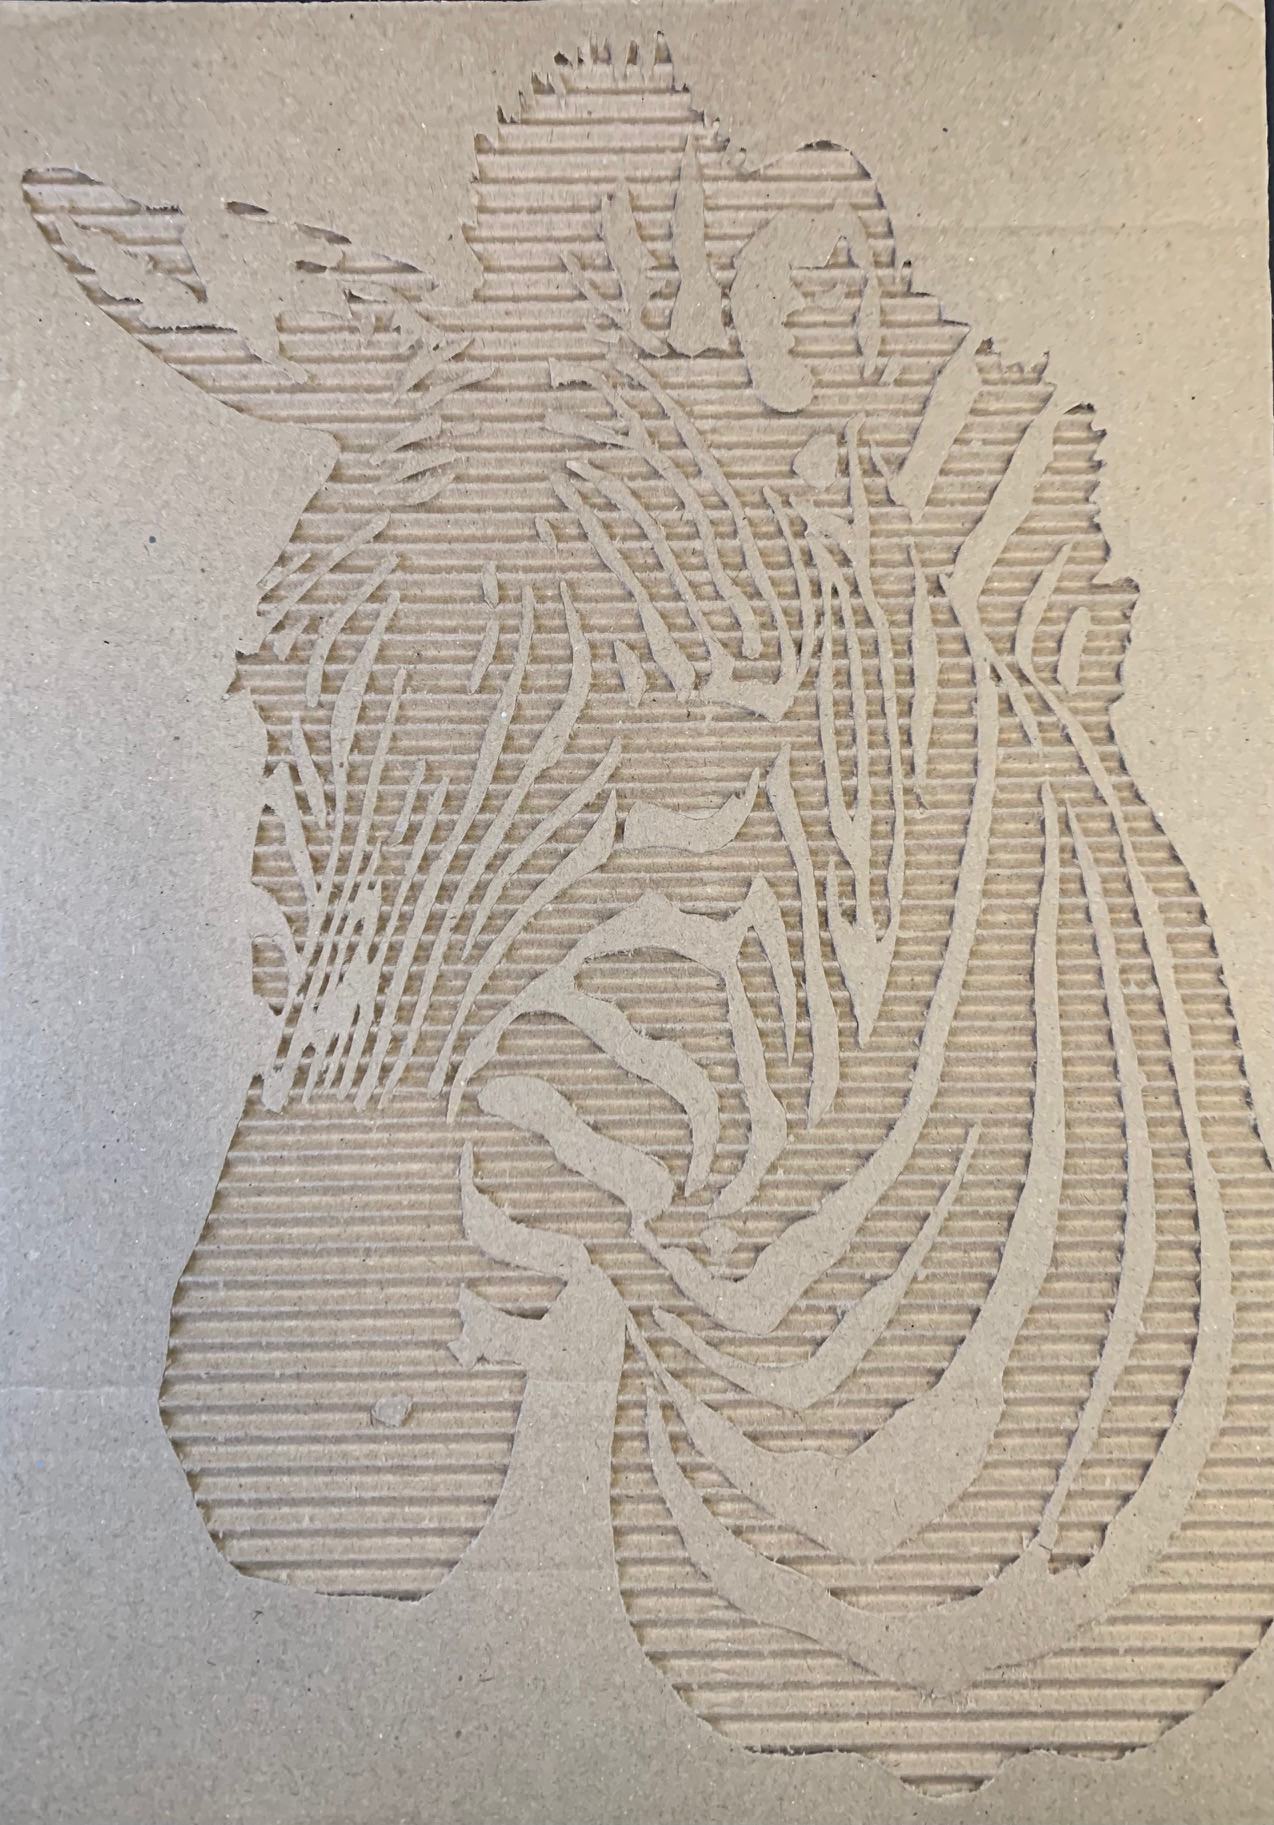 Cardboard Cut Out of a Zebra